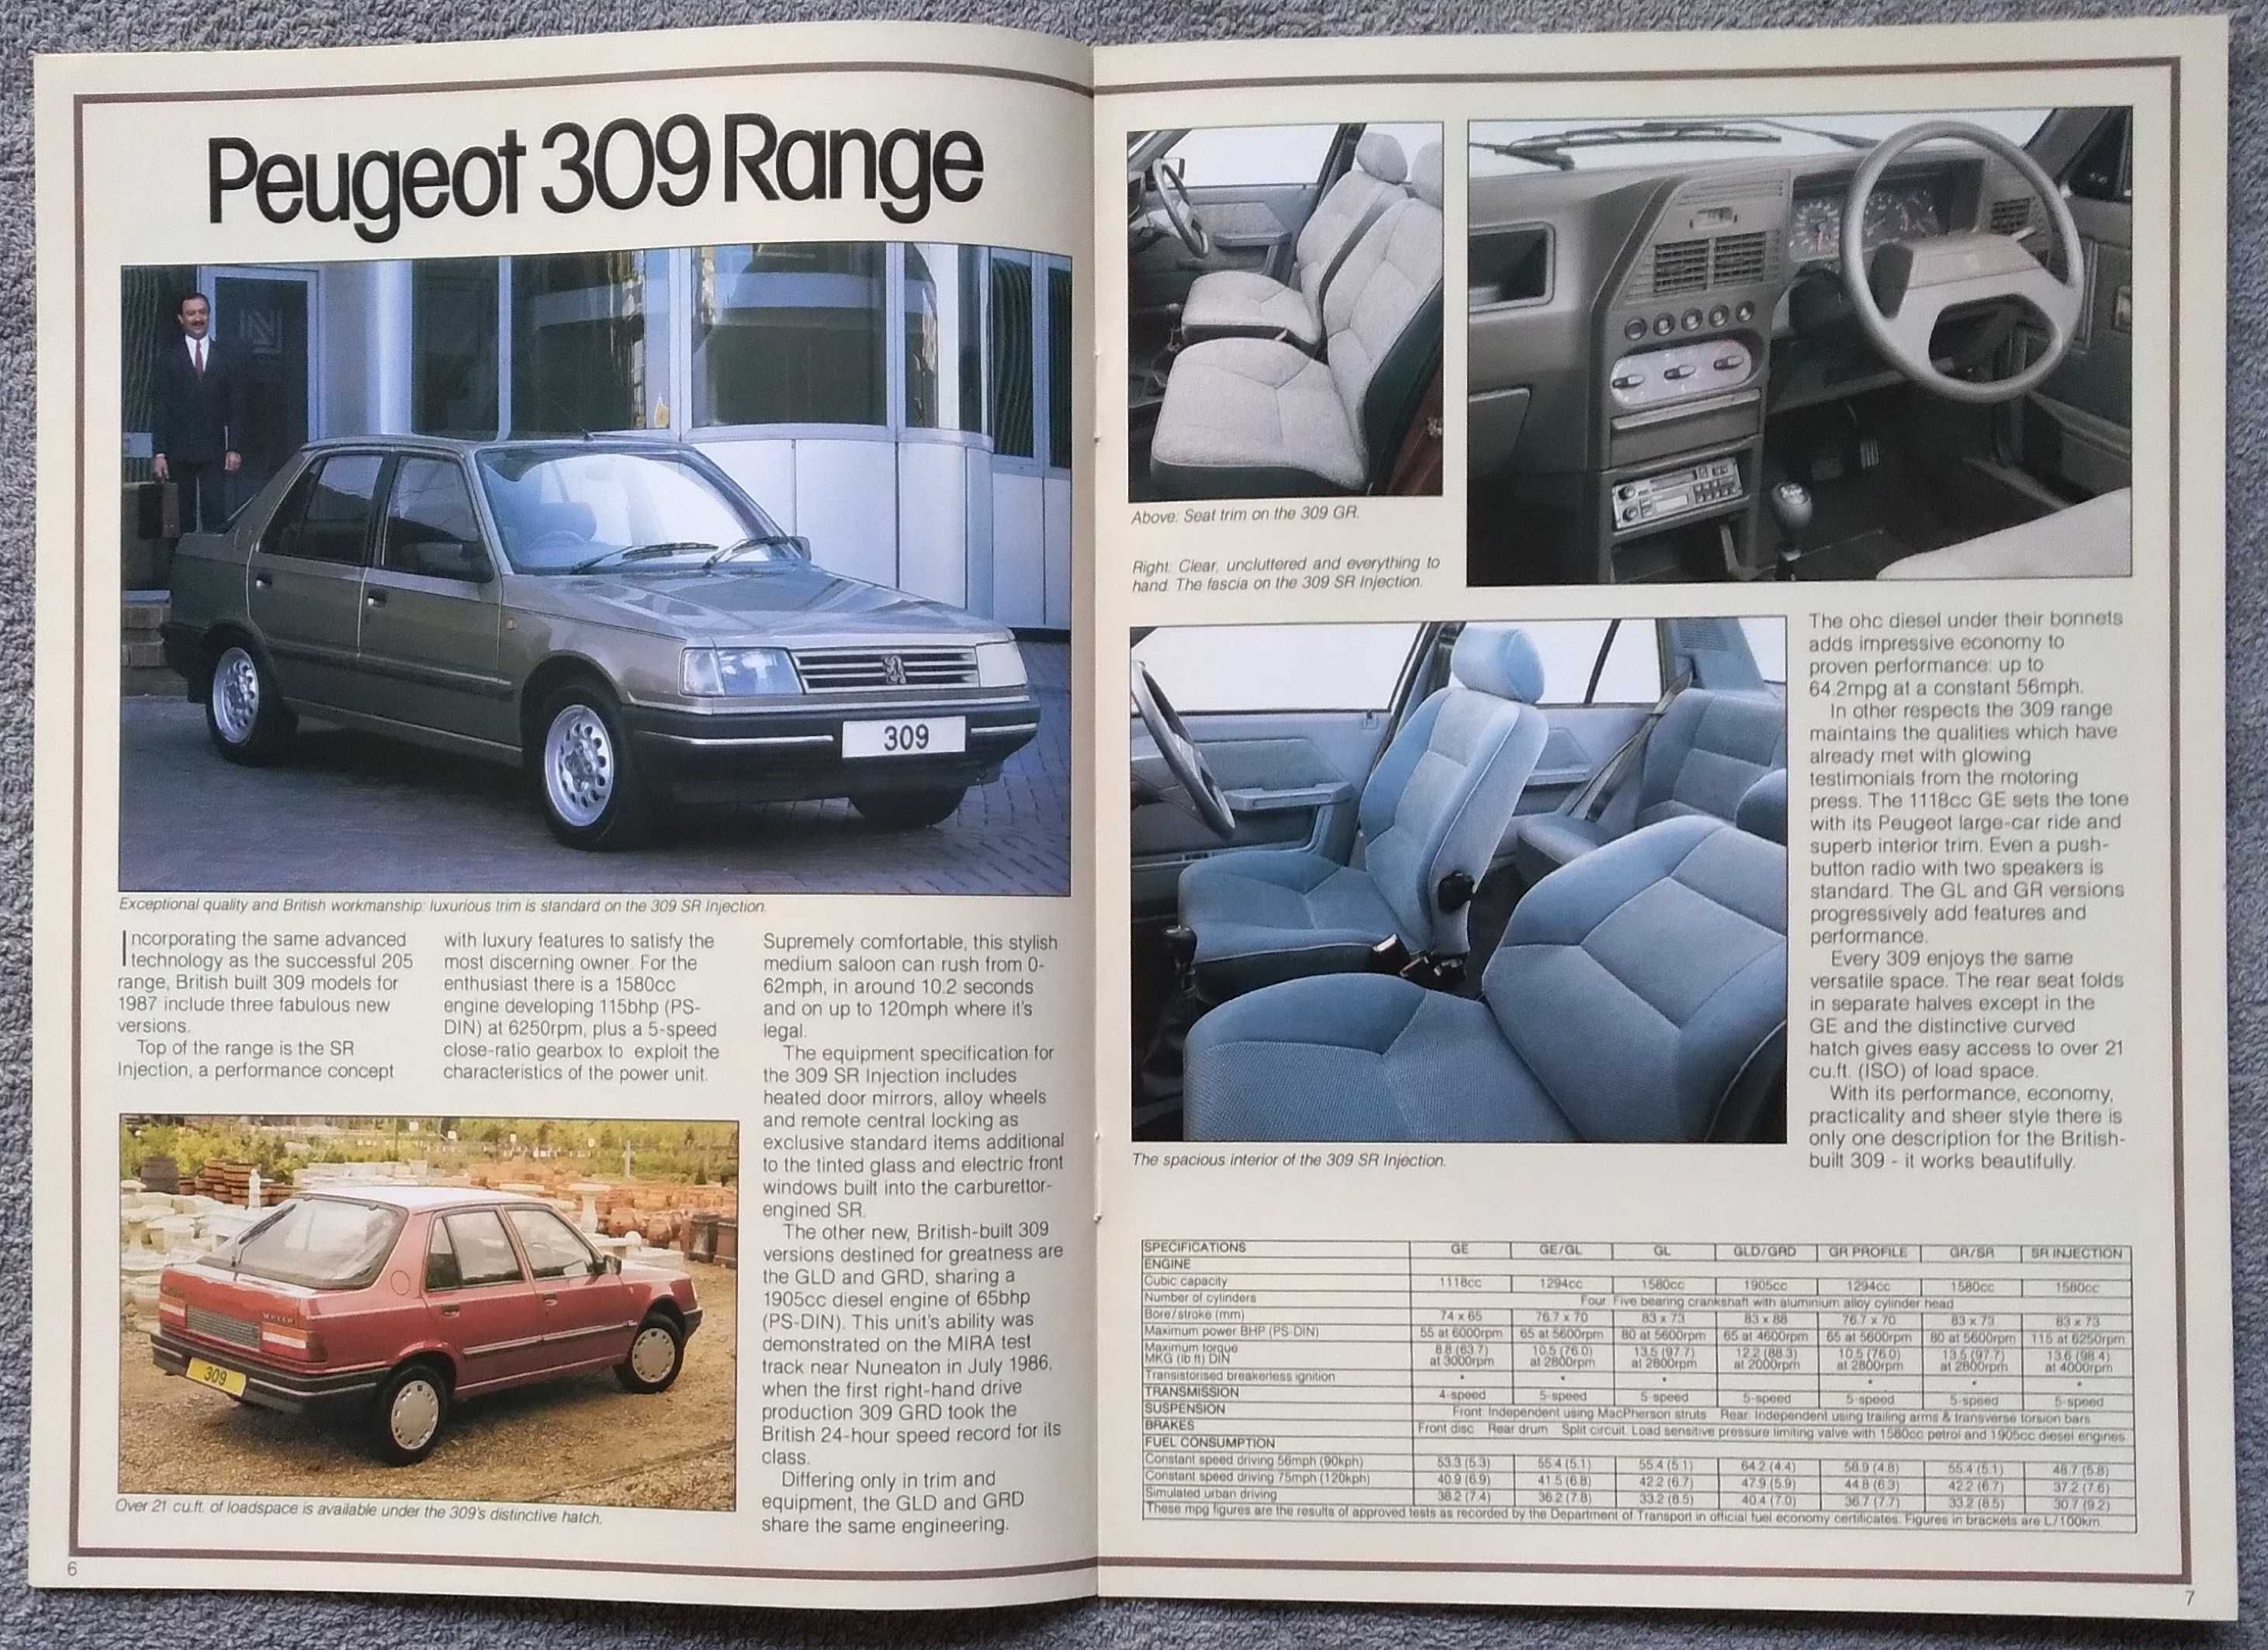 Prospekt Peugeot rok 1987 modele 205,309,305,505